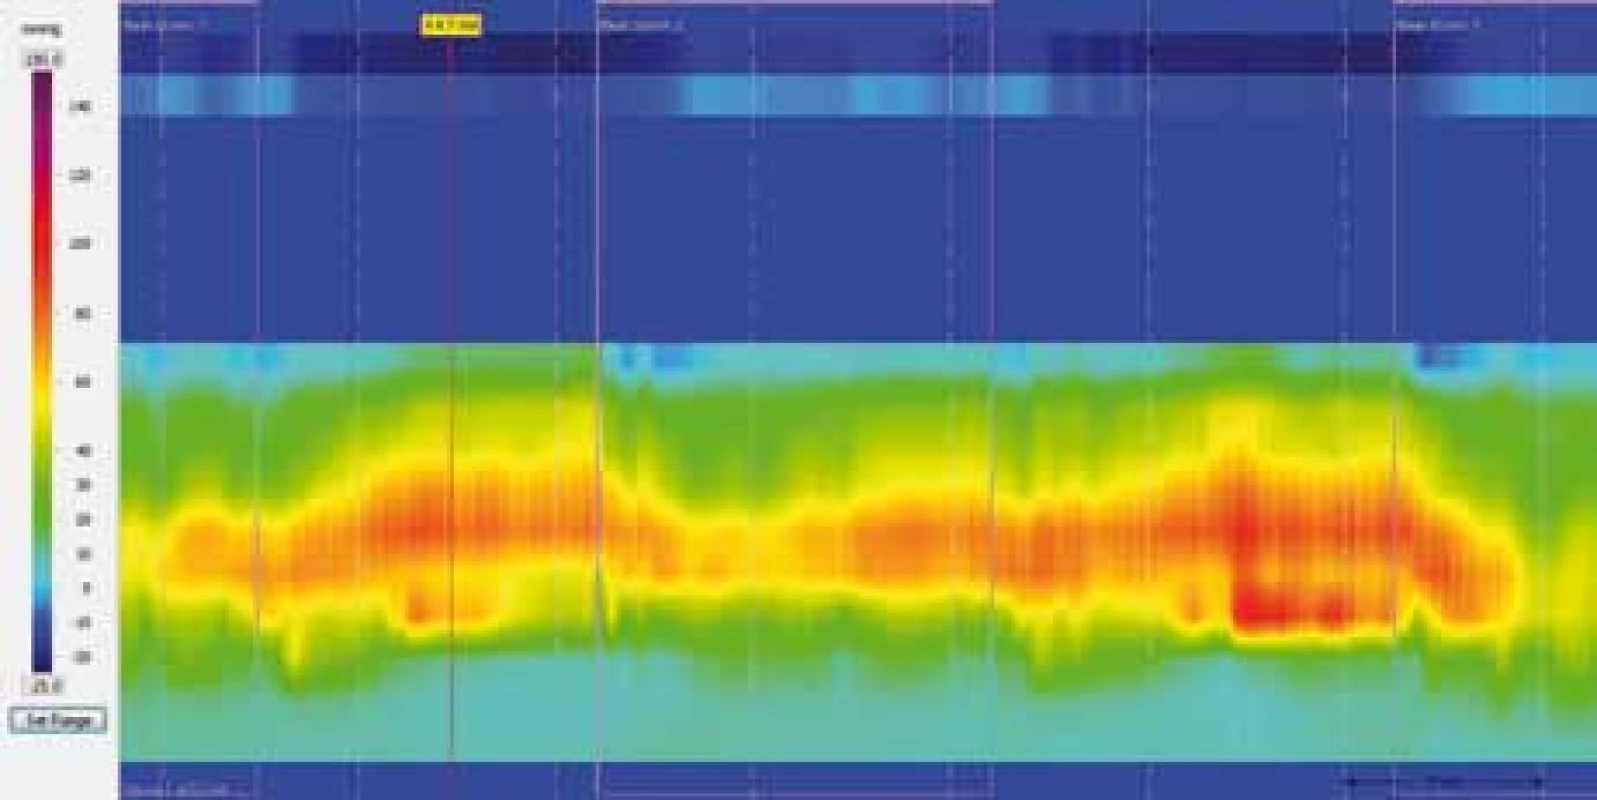 Barevná škála k zobrazení analyzovaných intraluminálních tlaků při HRAM.
Fig. 1. Color scale for depict of intraluminal pressure in HRAM.